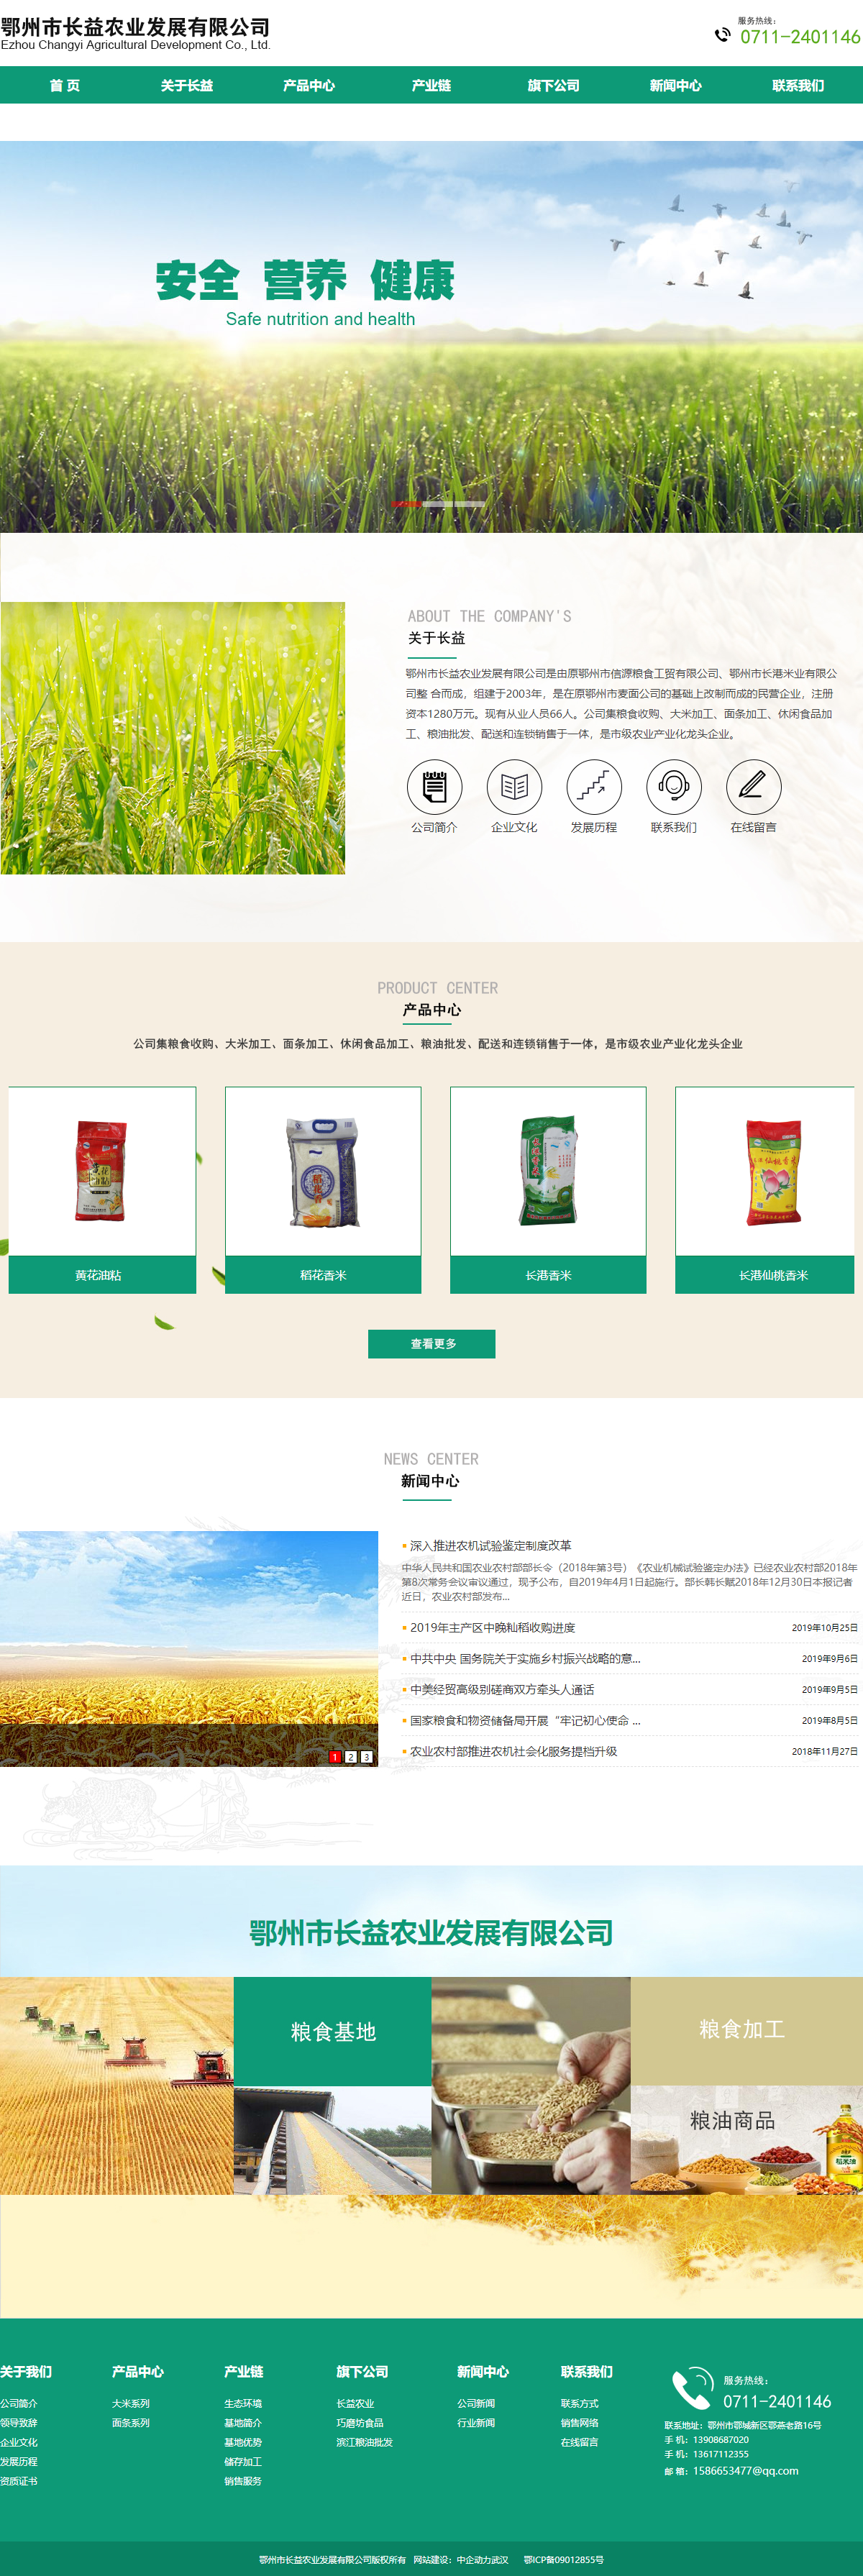 鄂州市长益农业发展有限公司网站案例